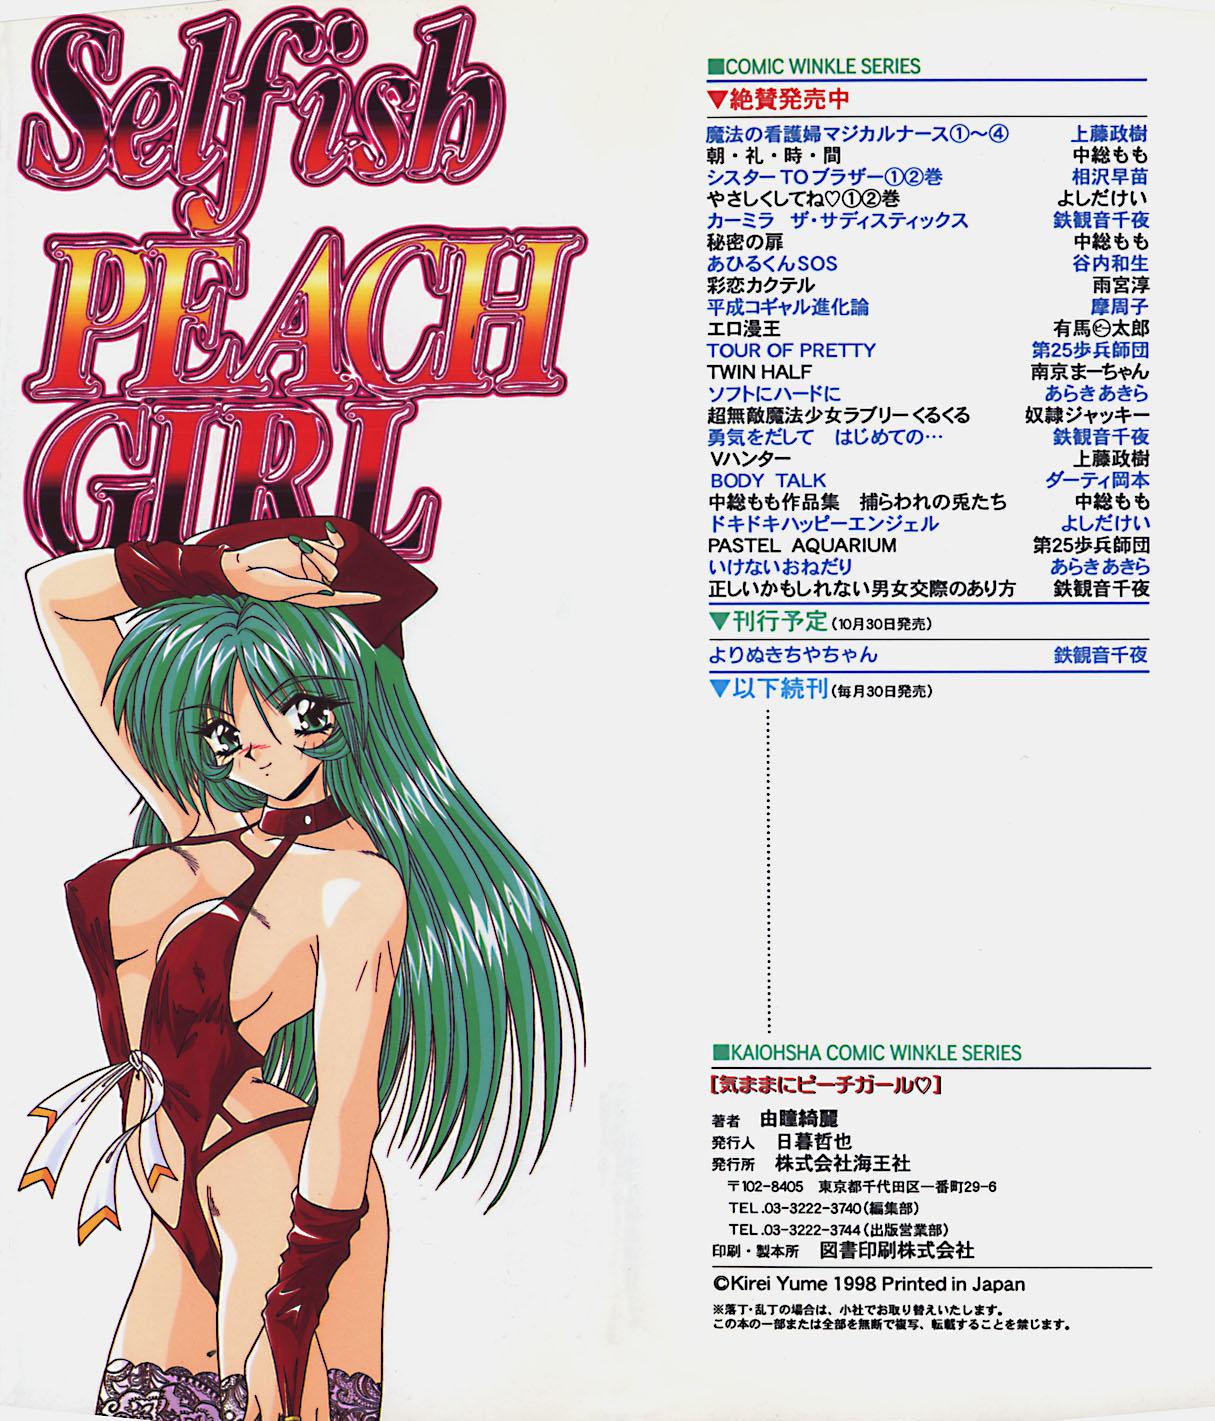 Reversecowgirl Kimama ni Peach Girl - Selfish Peach Girl  - Page 3